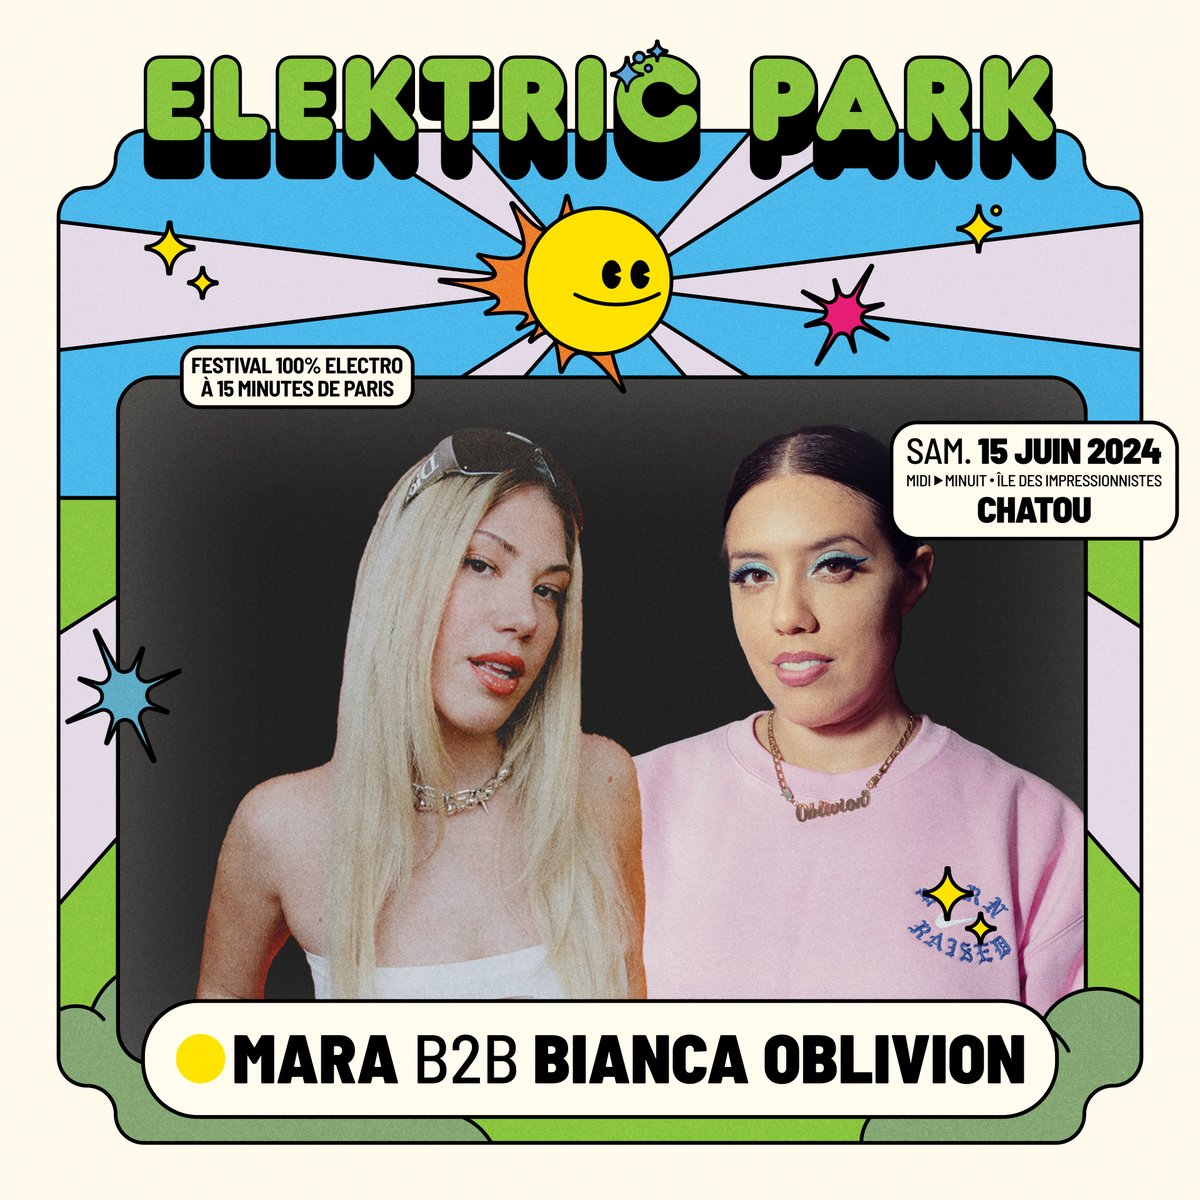 ANNONCE : Mara et Bianca Oblivion rejoignent le line-up d’EPK pour un B2B 100% 💞 On a hâte de découvrir leur premier B2B en exclu à EPK le 15 juin !